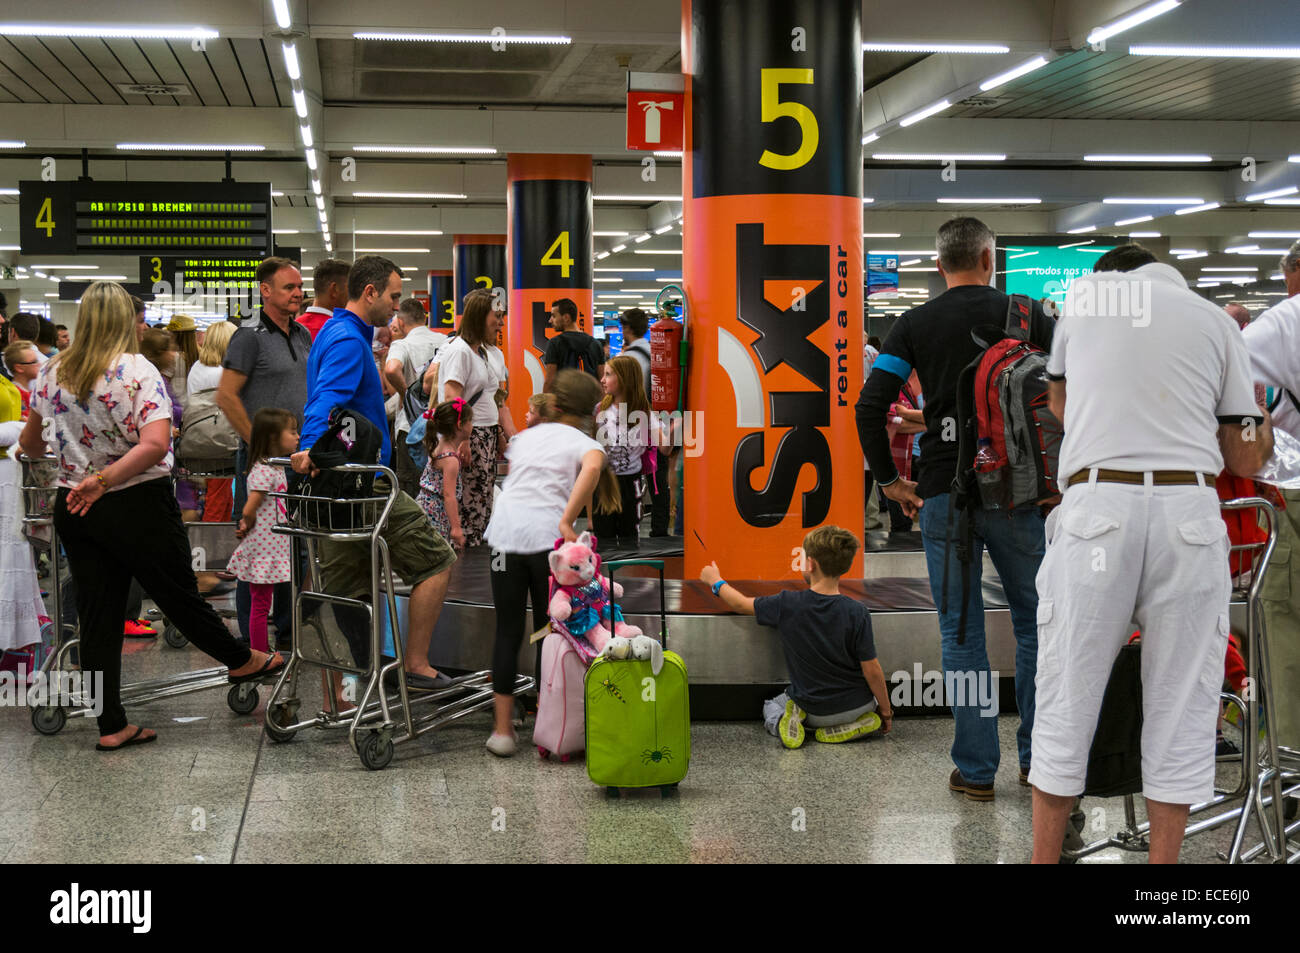 Passagers attendant leurs bagages dans un carrousel à bagages de l'aéroport Banque D'Images